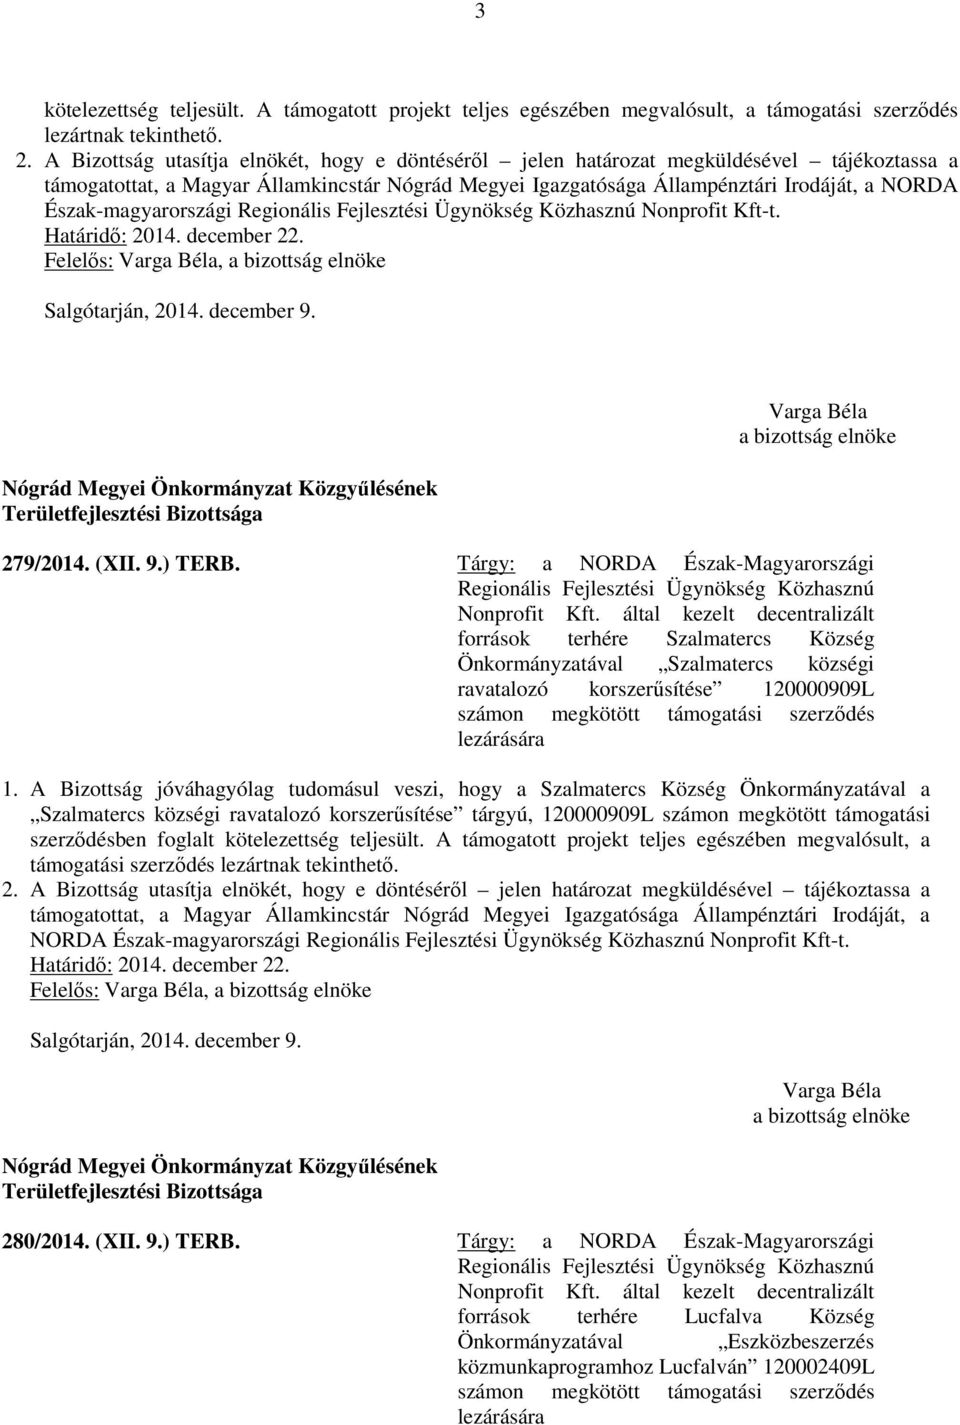 Tárgy: a NORDA Észak-Magyarországi források terhére Szalmatercs Község Önkormányzatával Szalmatercs községi ravatalozó korszerűsítése 120000909L számon megkötött támogatási szerződés lezárására 1.